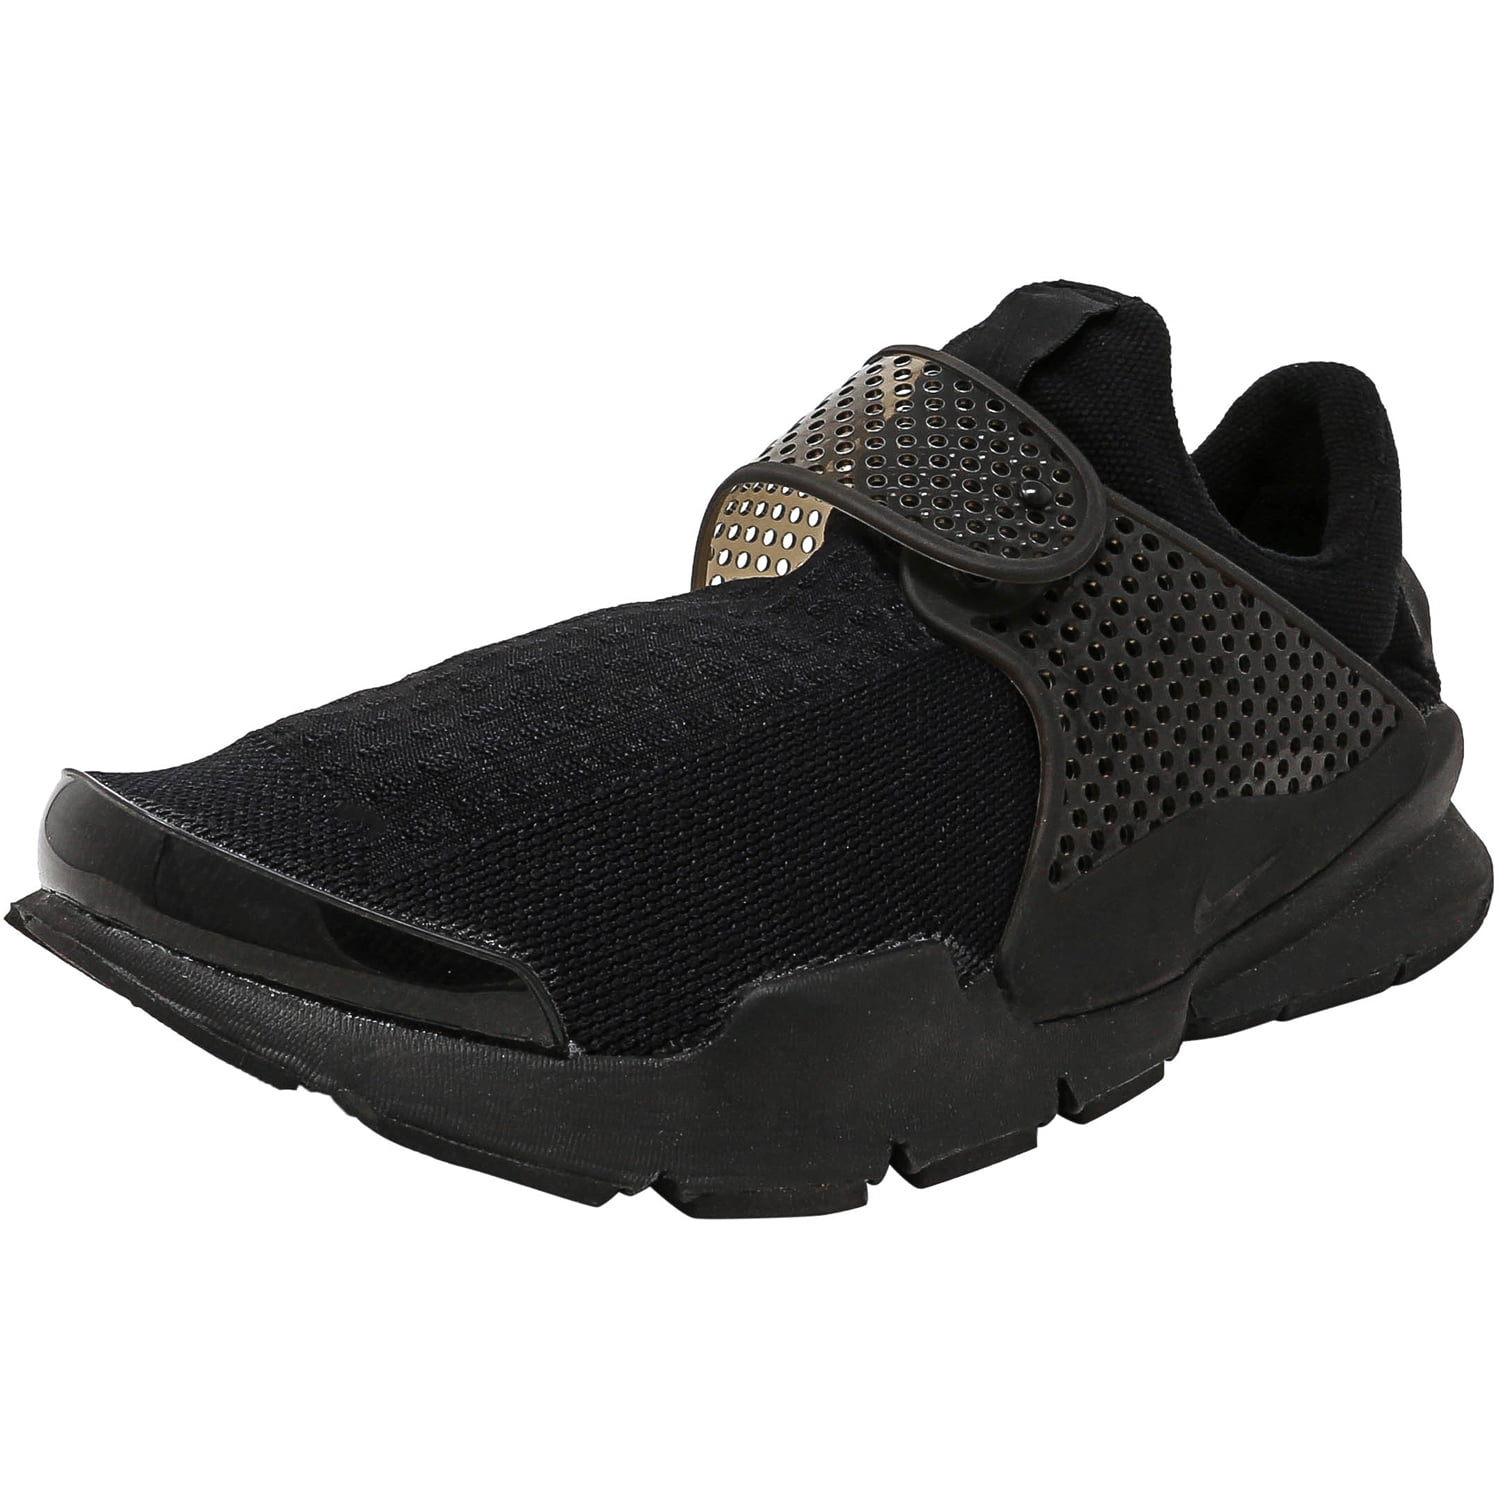 Faial Lift Gewoon doen Nike Men's Sock Dart Black / Black-Volt Ankle-High Running Shoe - 11M -  Walmart.com